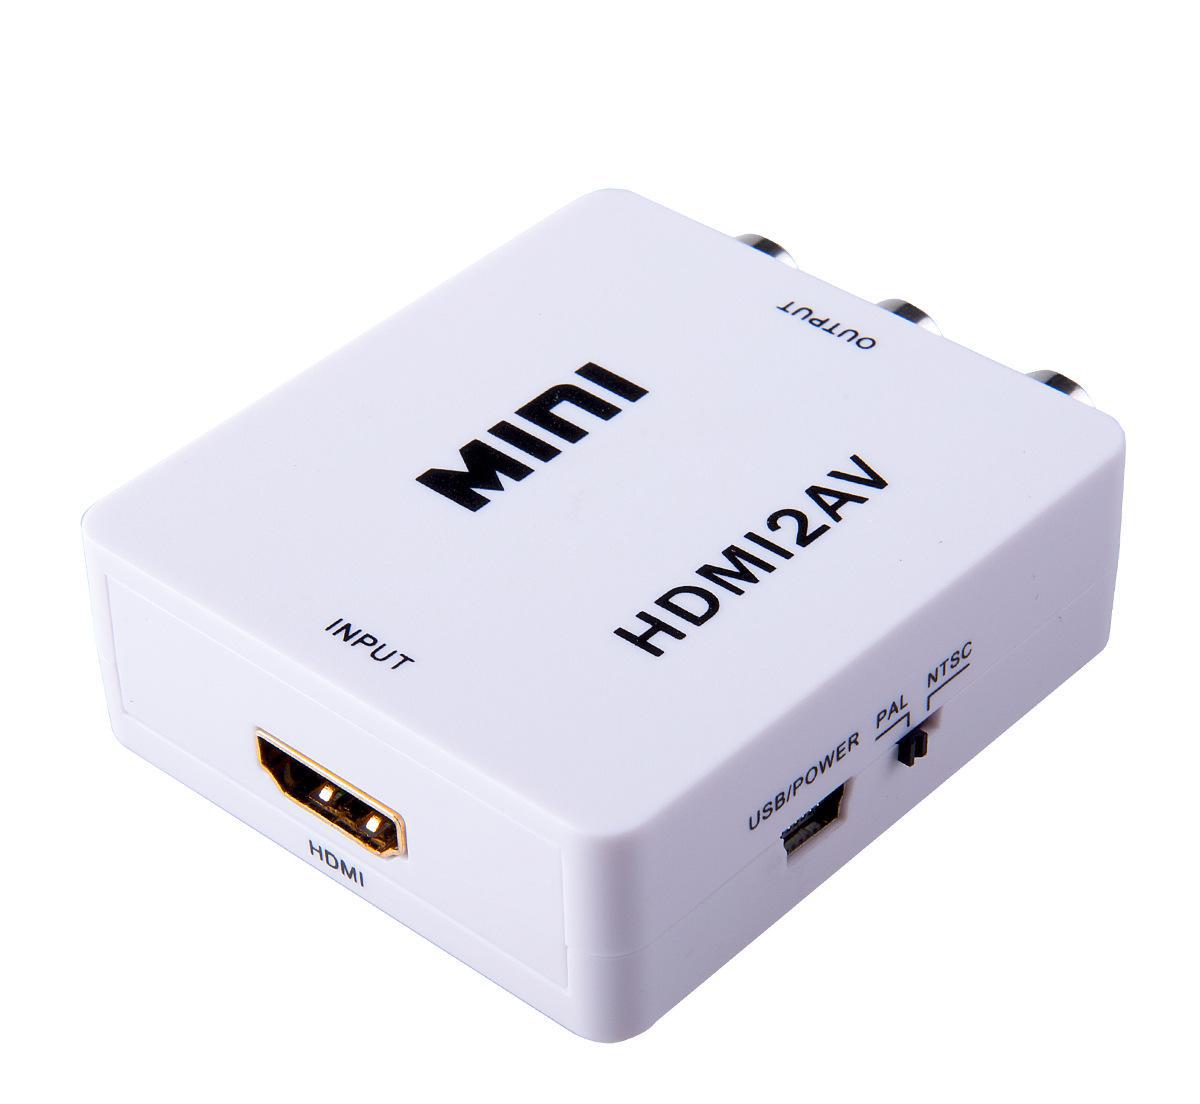 Mini VGA 2 HDMI VGA to HDMI mini VGA to HDMI hd switch  